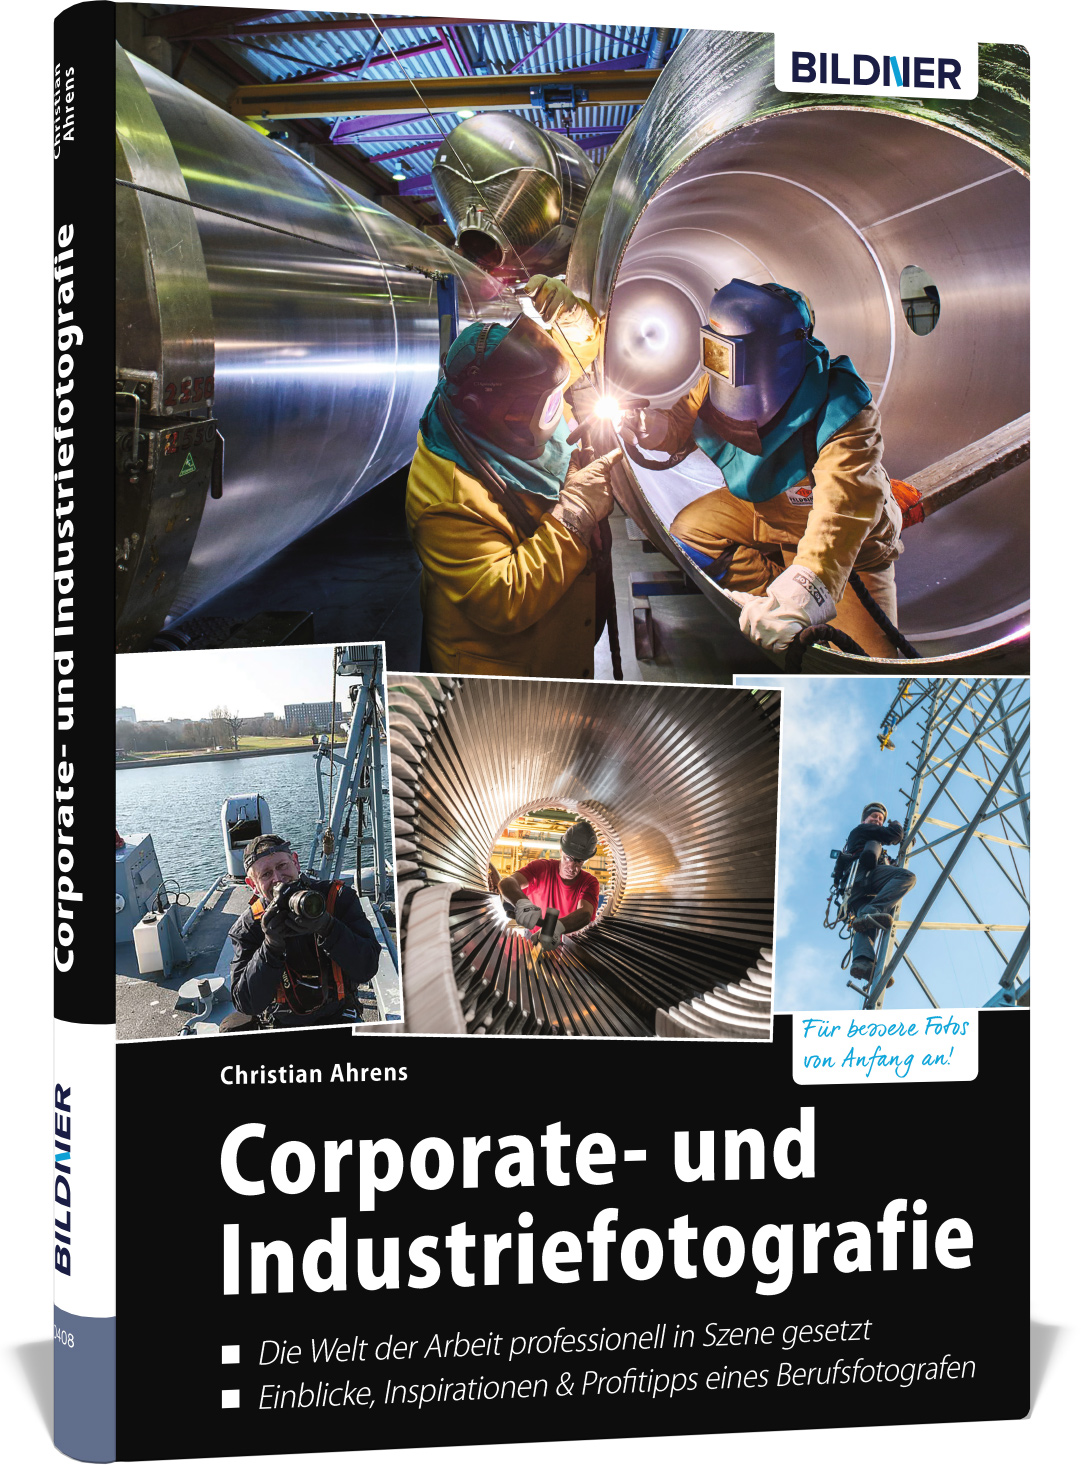 Bildner Corporate- und Industriefotografie Bild 01